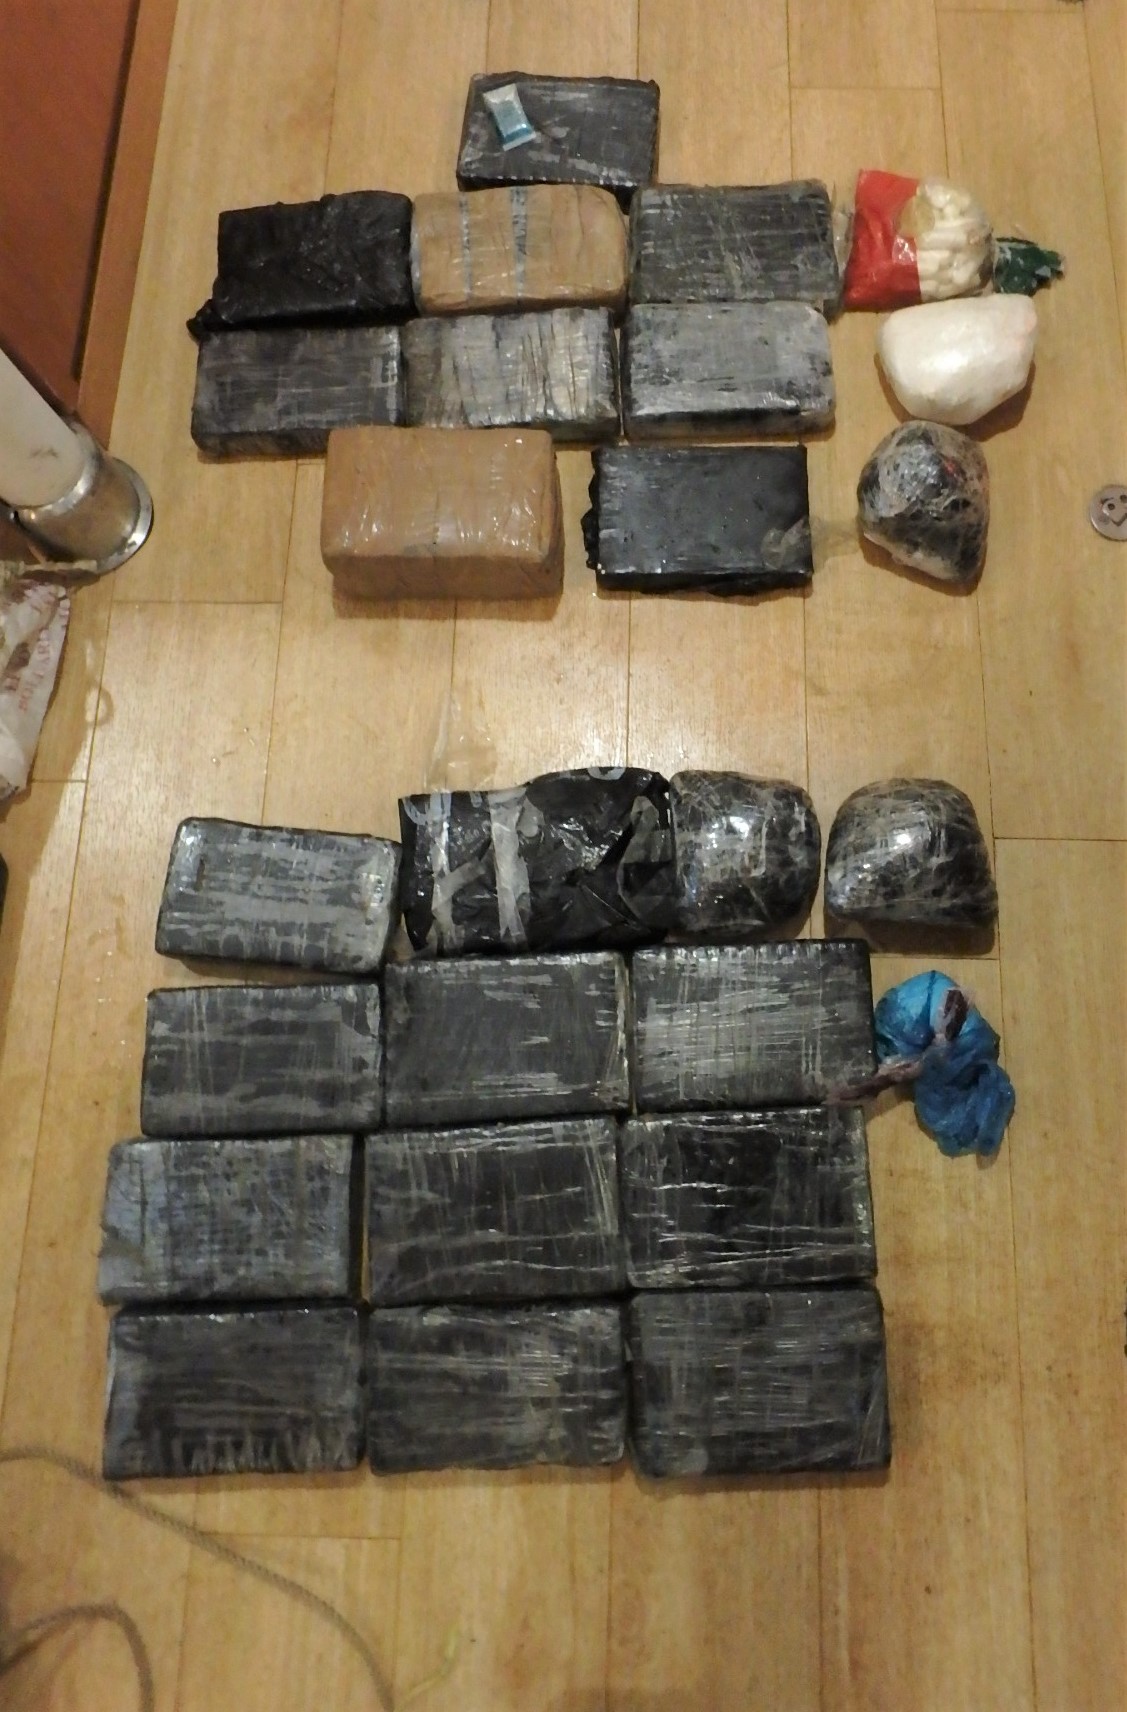     1300 kilos de cocaïne récupérés en mer

